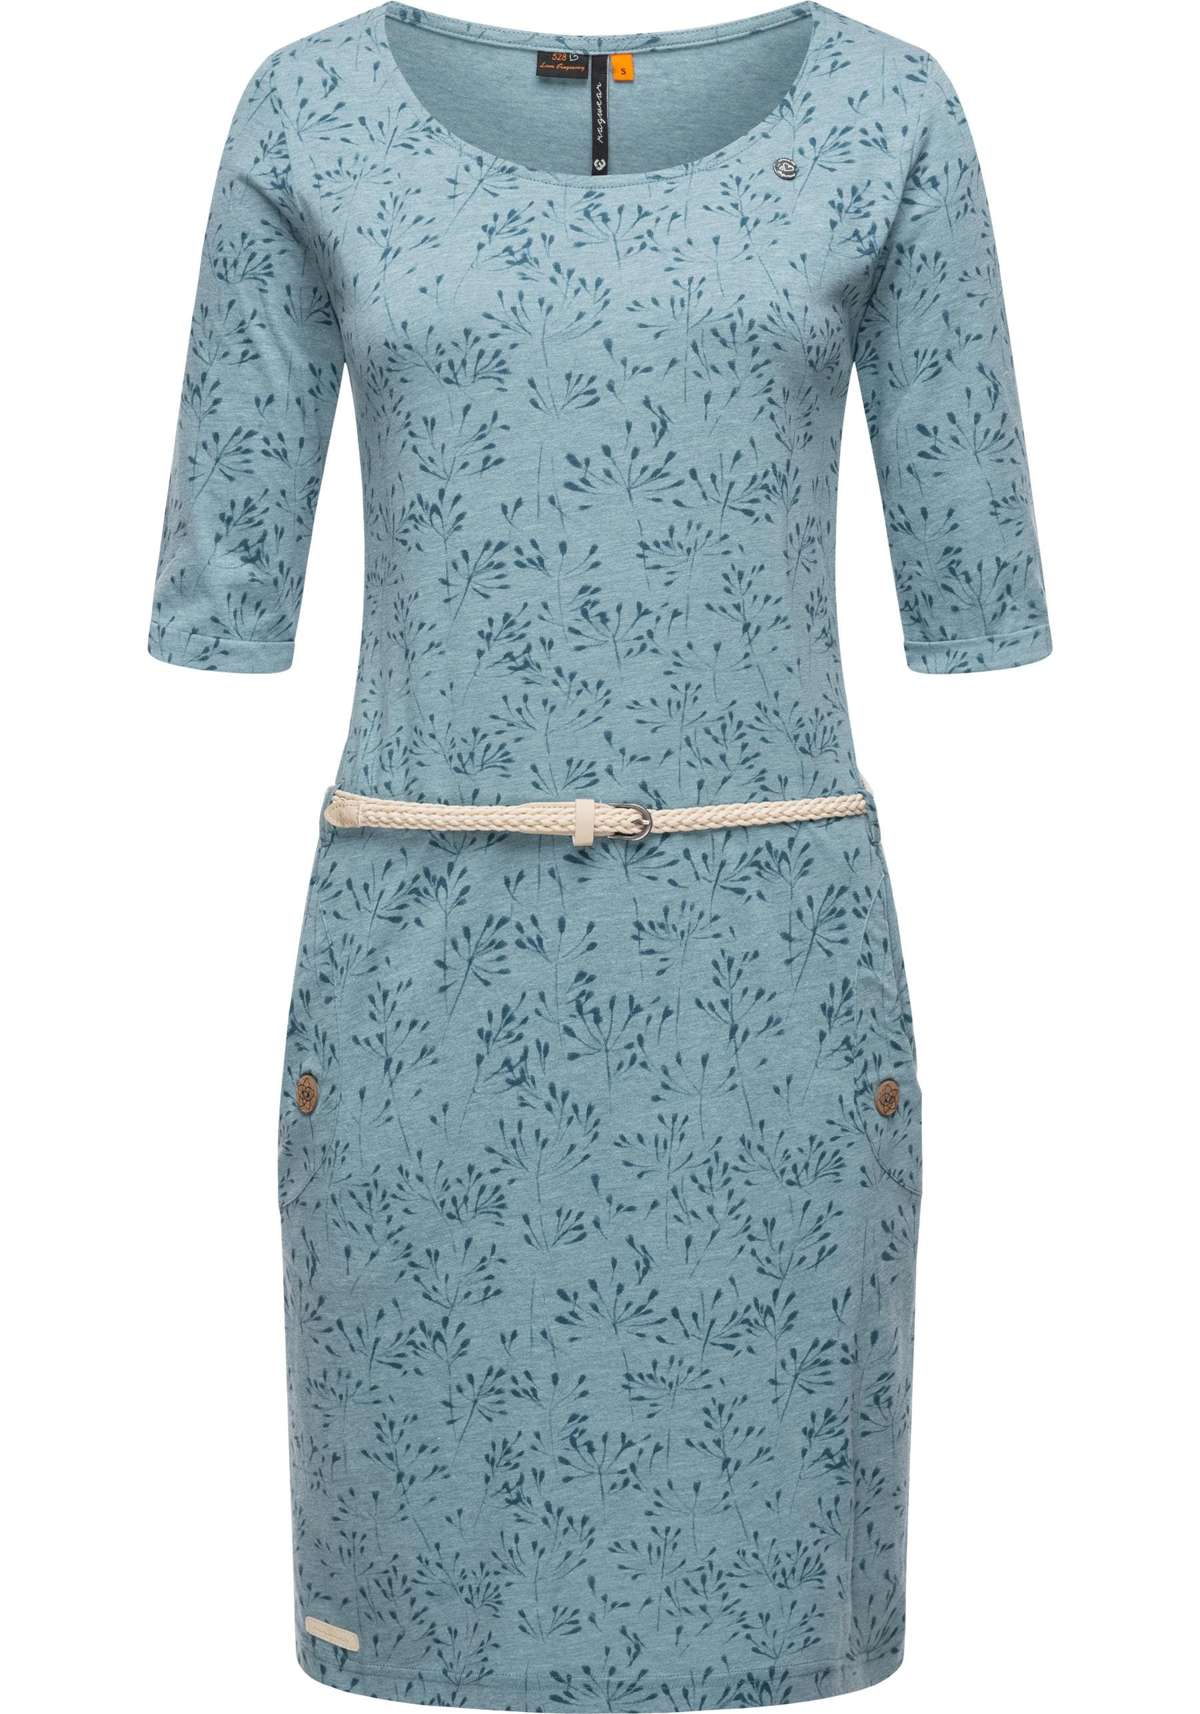 Платье из джерси, (2 шт.), стильное платье-рубашка с полурукавами и поясом.